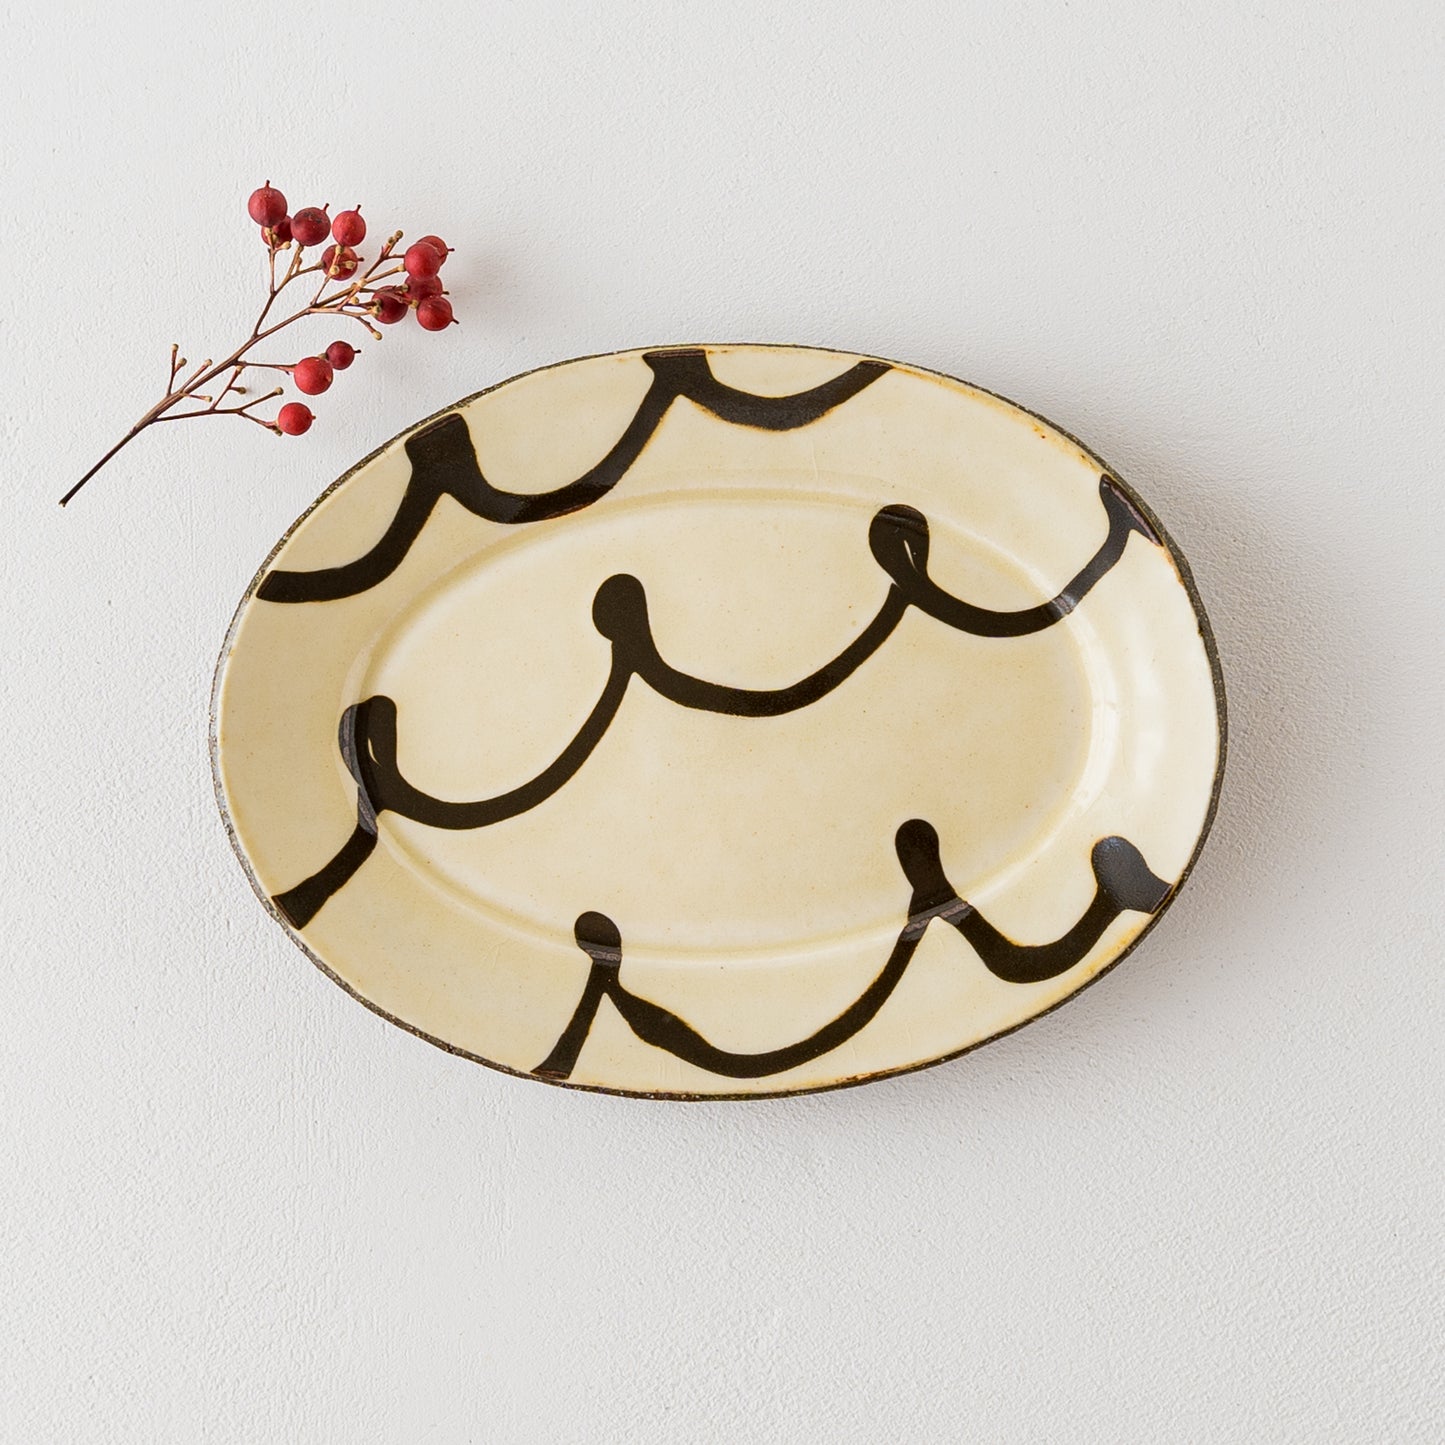 紀窯中川紀夫さんのスリップウェアくるくる模様楕円リム皿